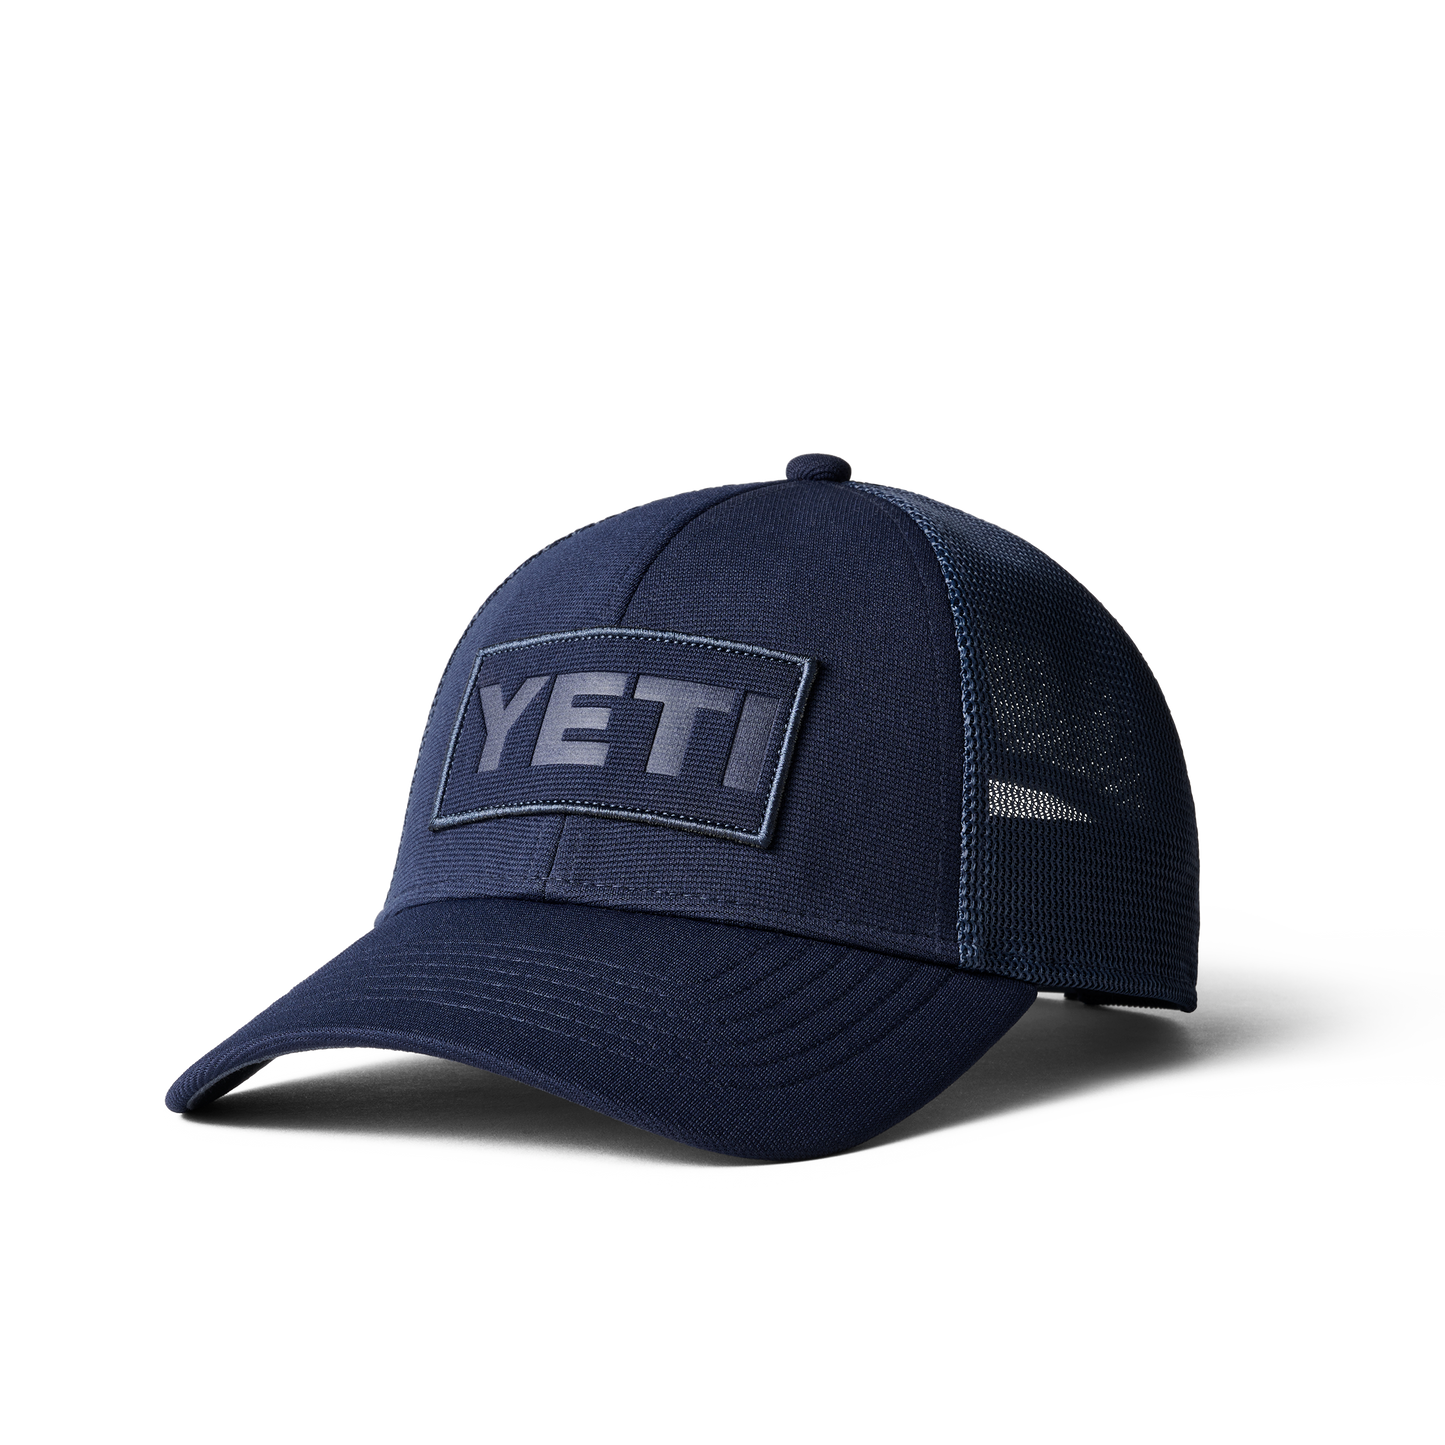 YETI Core Patch Trucker Hat Navy on Navy Navy/Navy